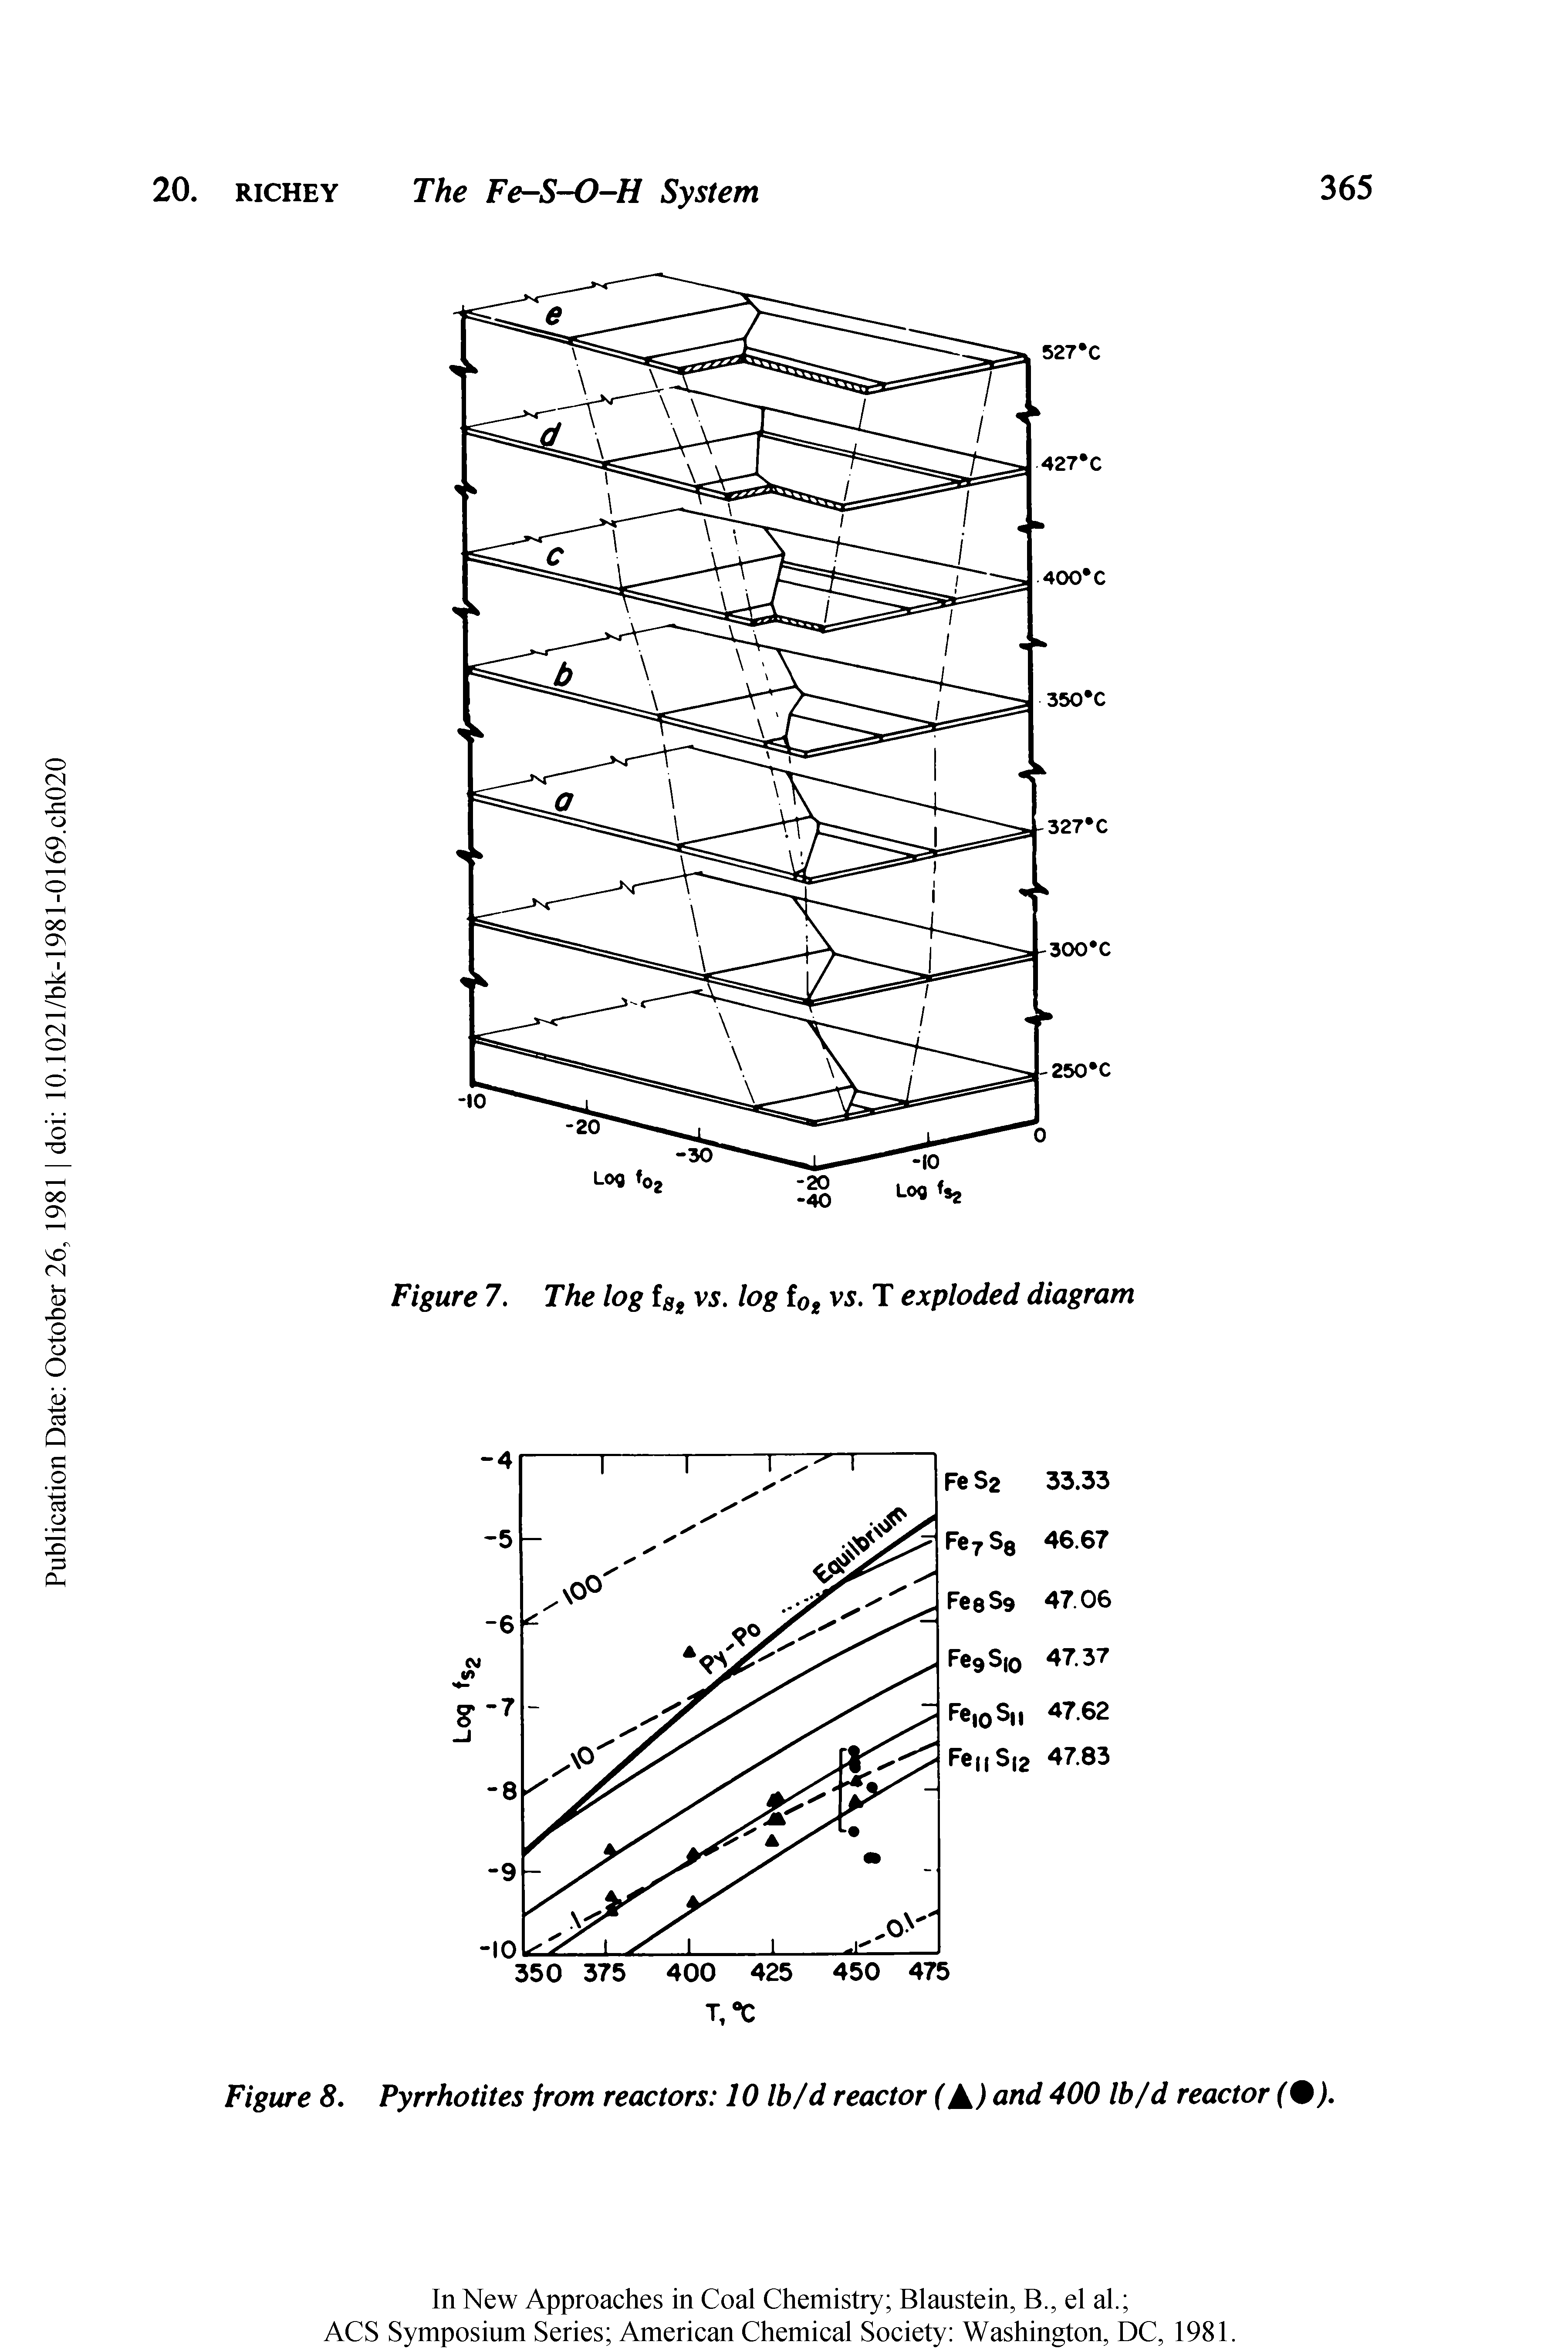 Figure 8. Pyrrhotites from reactors 10 Ib/d reactor (A) and 400 Ib/d reactor (%).